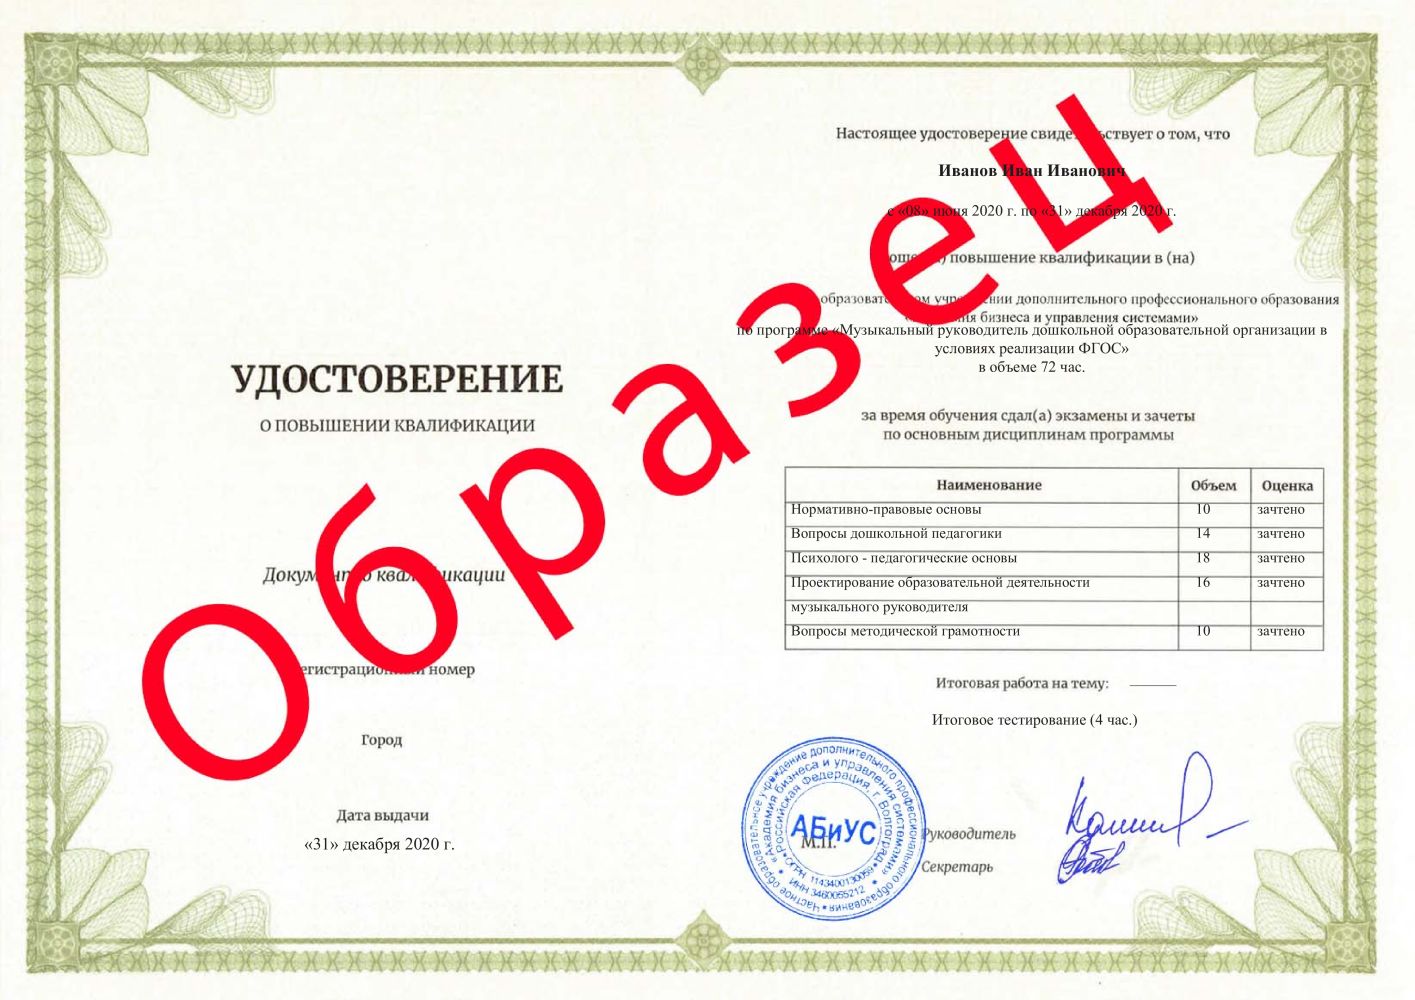 Удостоверение Музыкальный руководитель дошкольной образовательной организации в условиях реализации ФГОС 72 часа 2500 руб.